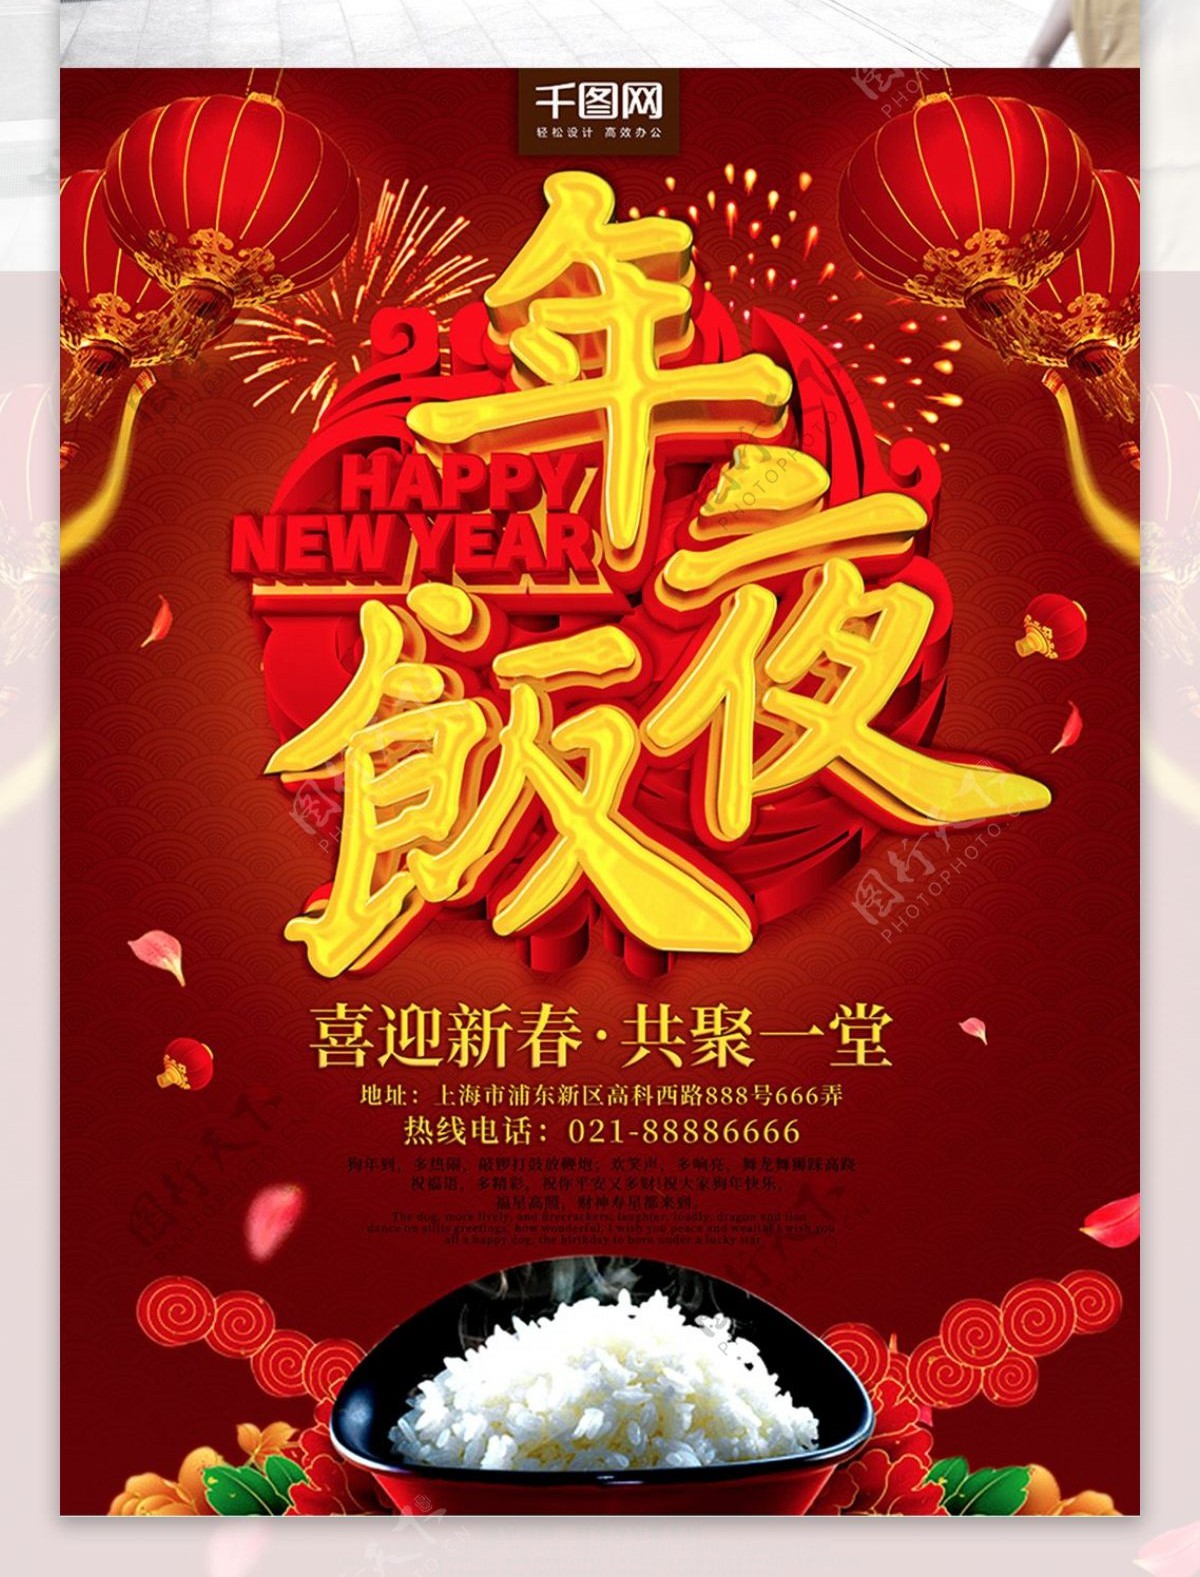 红色大气中国风除夕年夜饭主题宣传海报